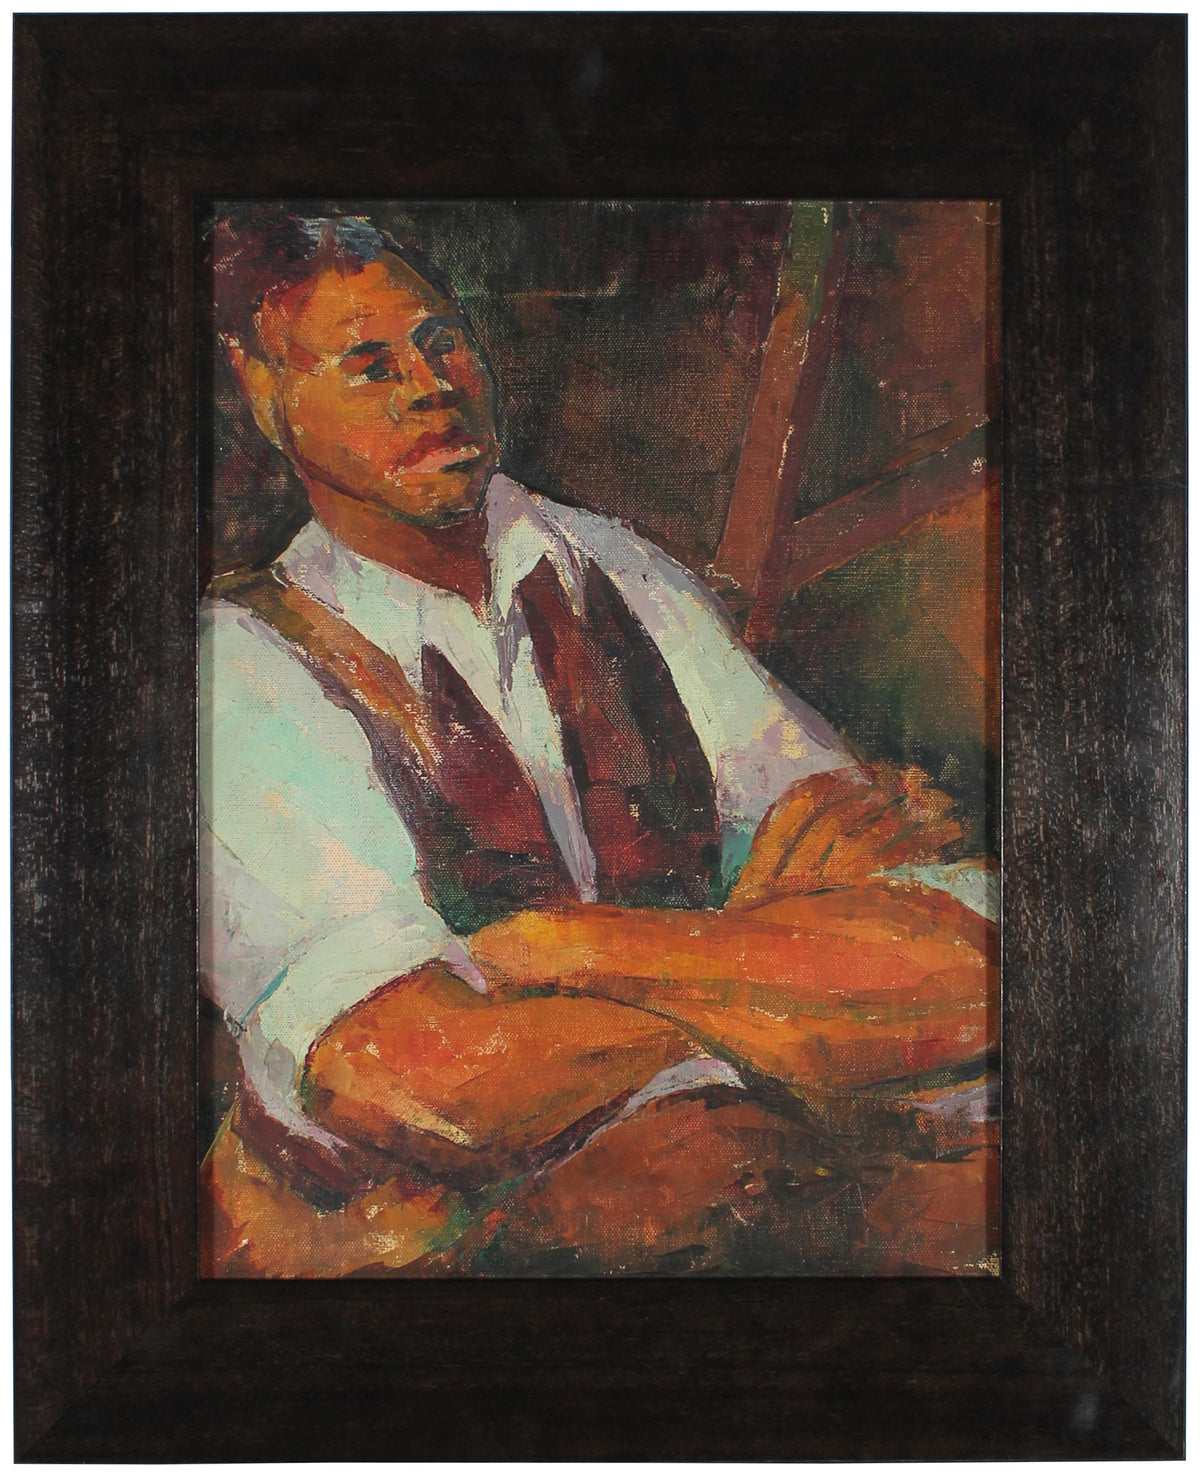 Expressive Male Portrait&lt;br&gt;1940s Oil&lt;br&gt;&lt;br&gt;#49501